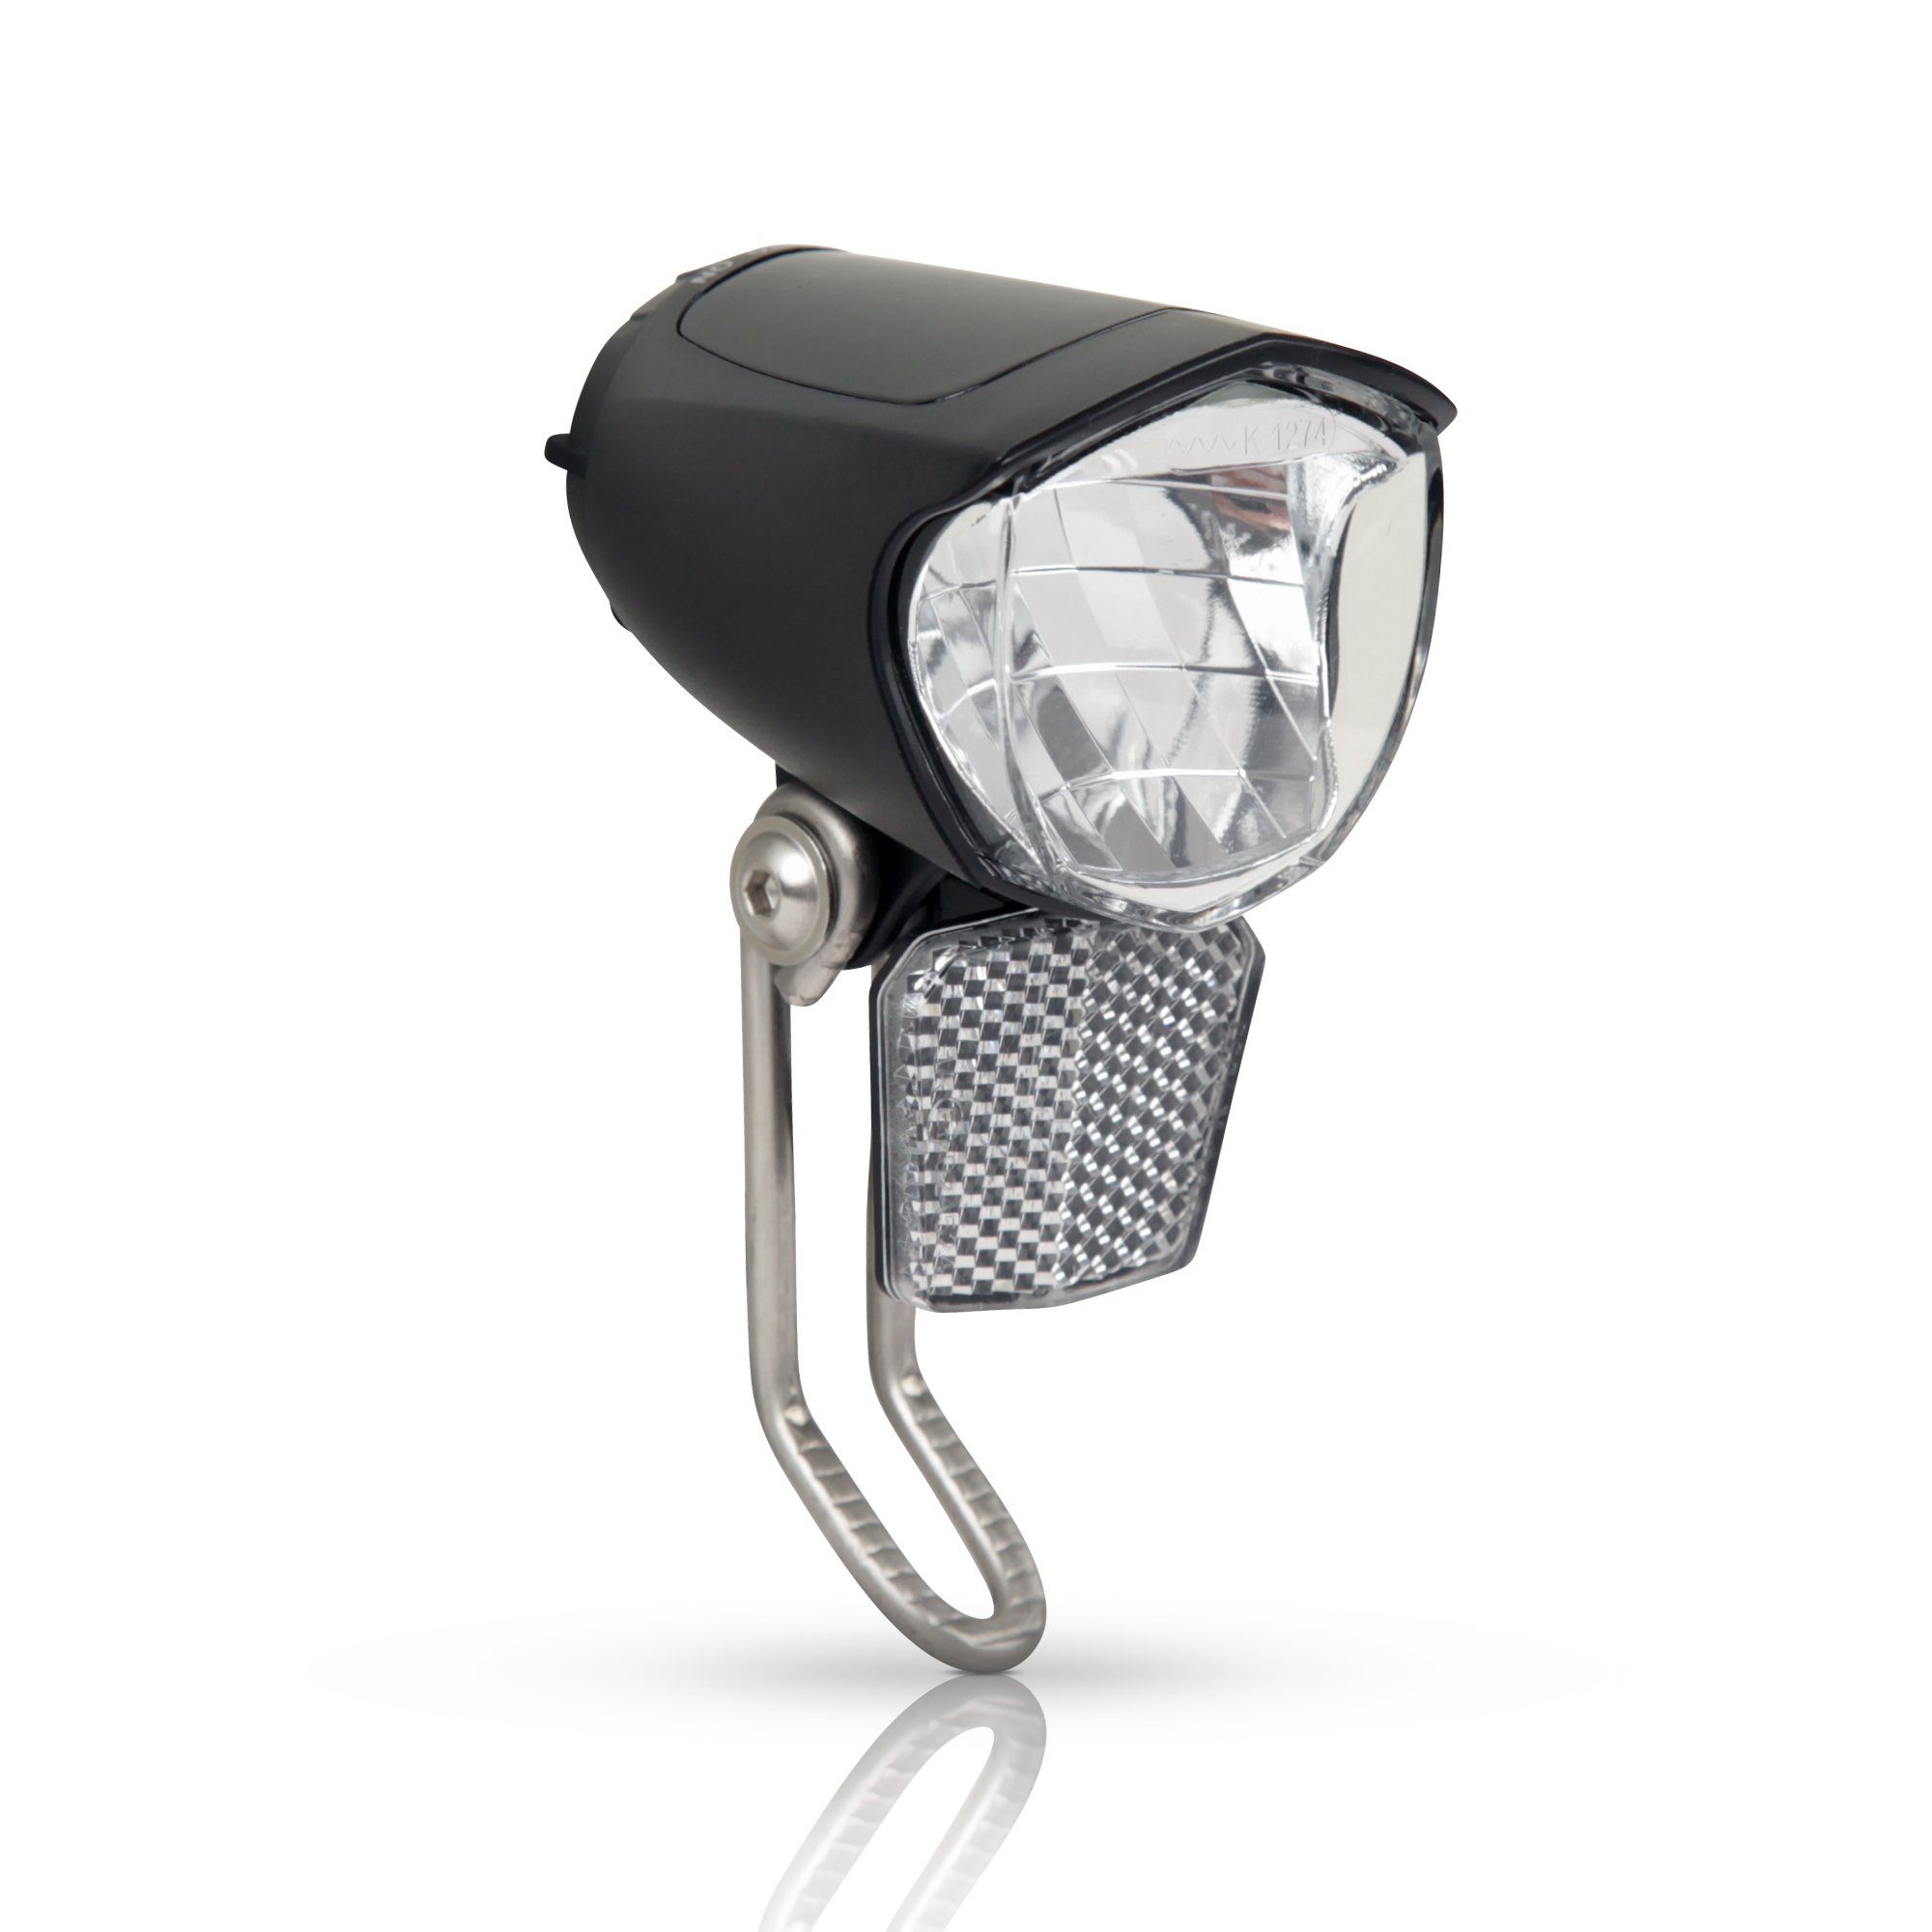 Bestlivings Fahrrad-Frontlicht »Fahhradlicht - 05261«, LED Fahrrad  Scheinwerfer 75 Lux für Nabendynamo - Fahrradlampe mit Lichtautomatik und  Standlicht - Frontlicht, StVZO zugelassen online kaufen | OTTO